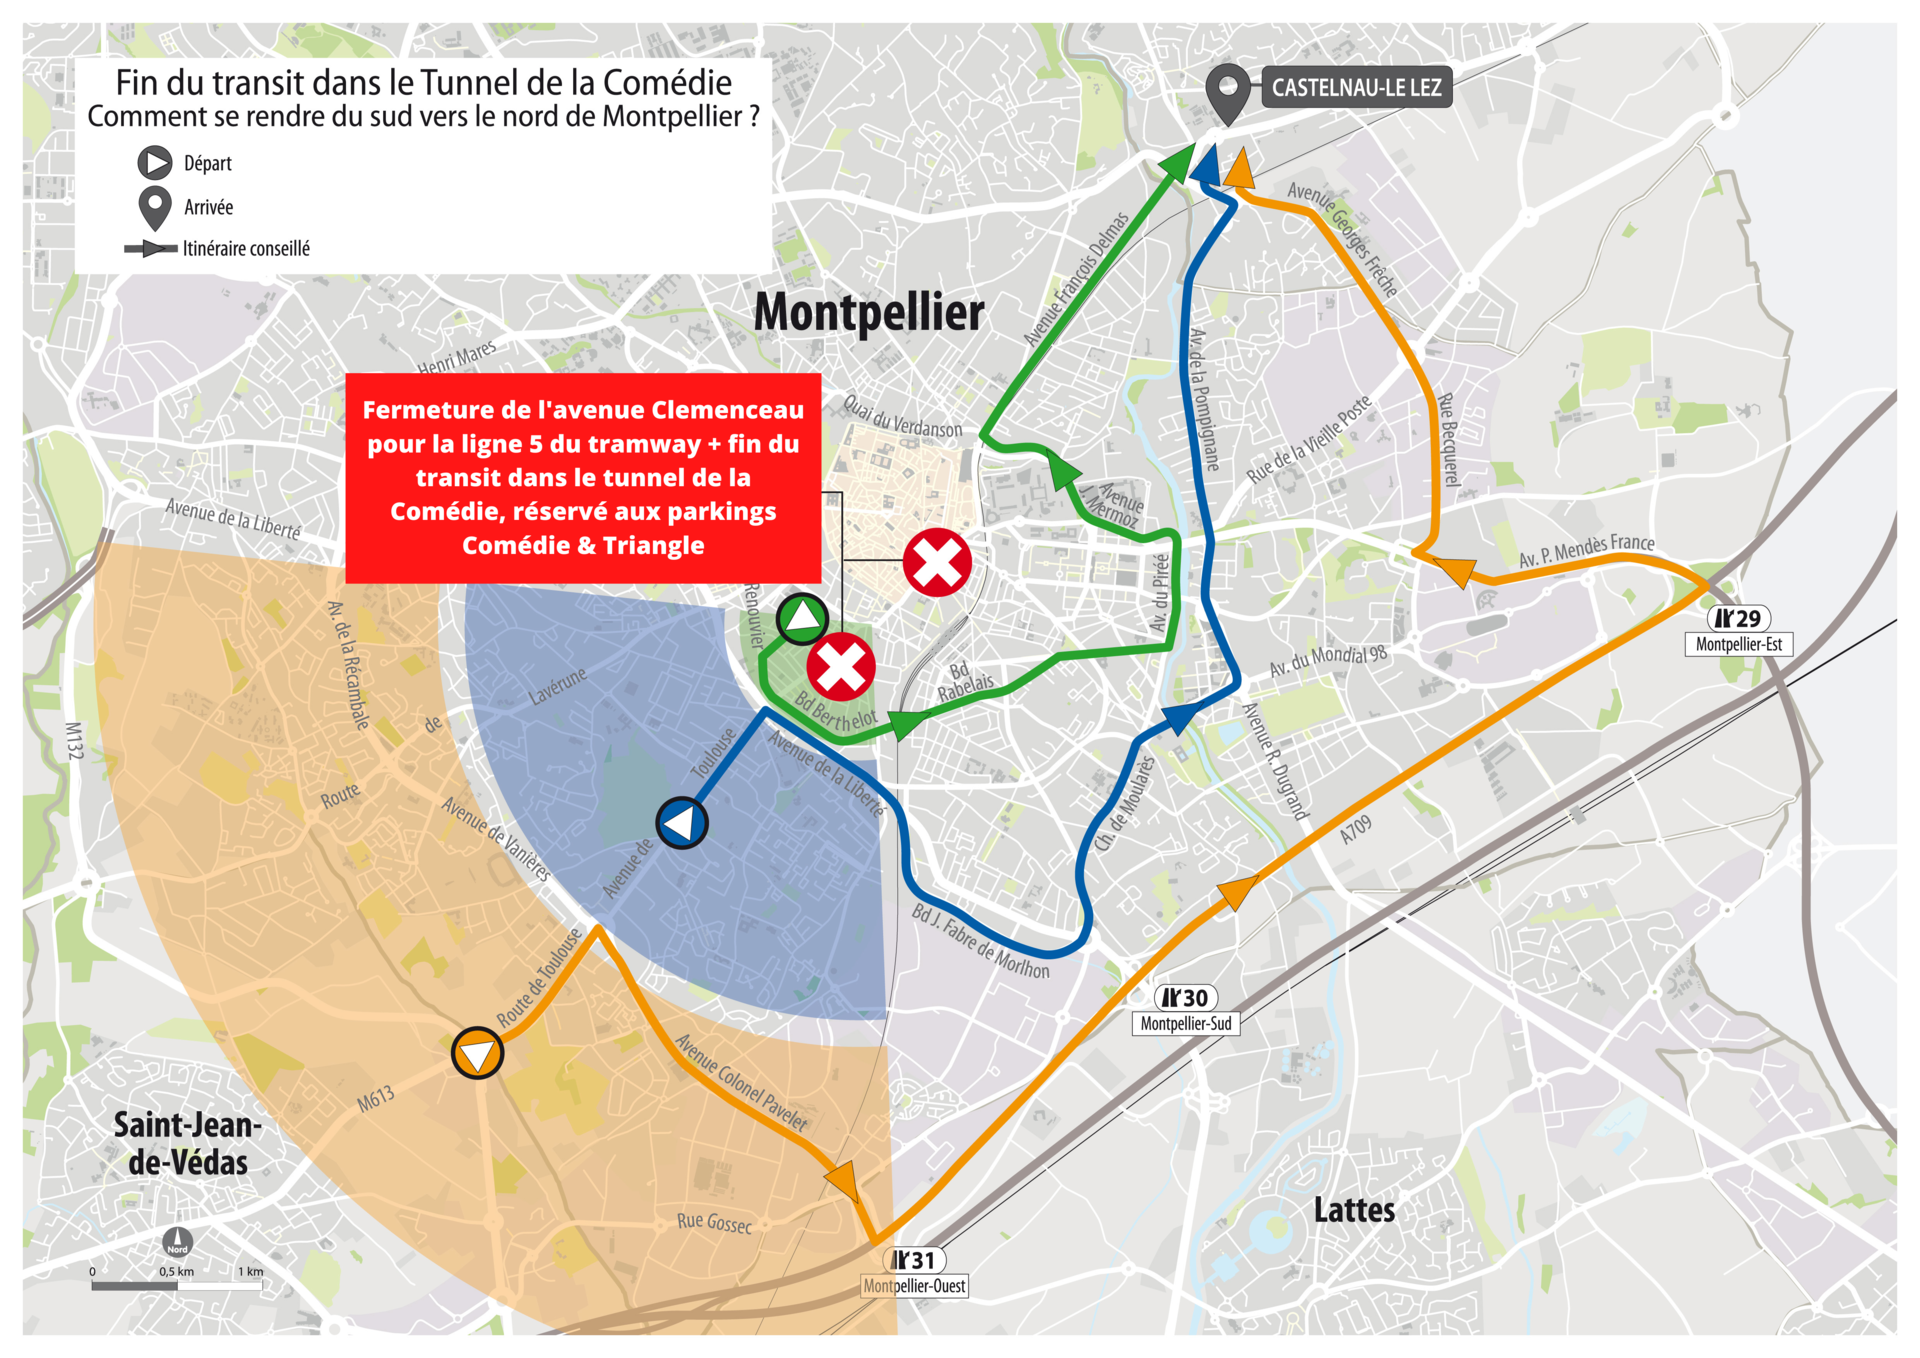 Fermeture de l'avenue Clemenceau pour la ligne 5 du tramway + fin du transit dans le tunnel de la Comédie, réservé aux parkings Comédie & Triangle